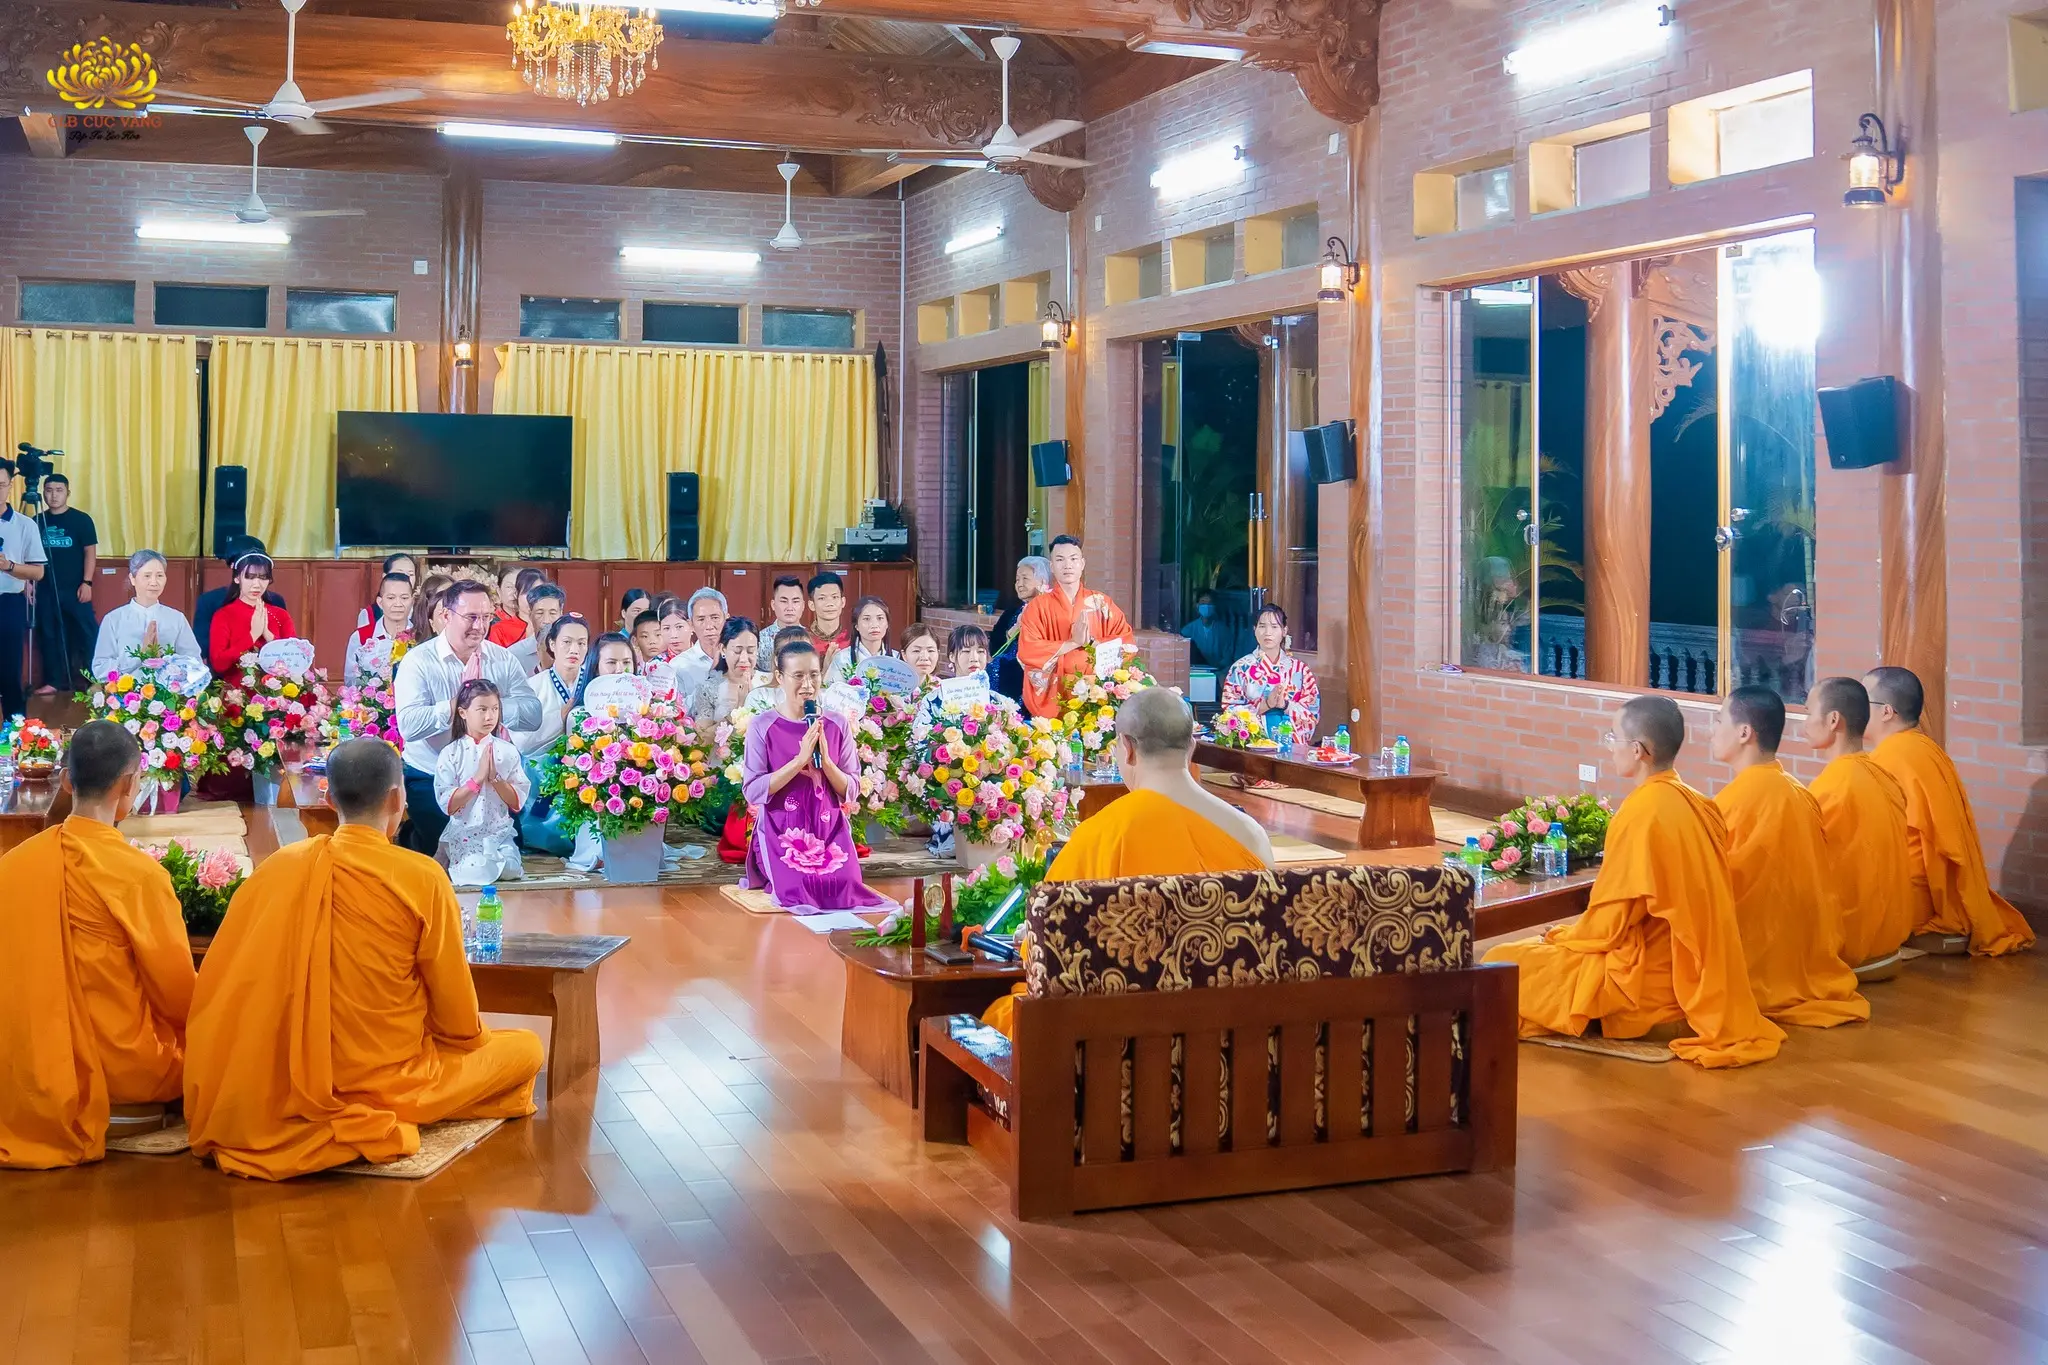 Nhân chuyến về thăm chùa, các Phật tử đến từ 9 đạo tràng Phật tử xa xứ đã được đảnh lễ, tri ân và vấn an sức khỏe Sư Phụ cùng chư Tăng chùa Ba Vàng dưới sự tác bạch của Cô chủ nhiệm Phạm Thị Yến.